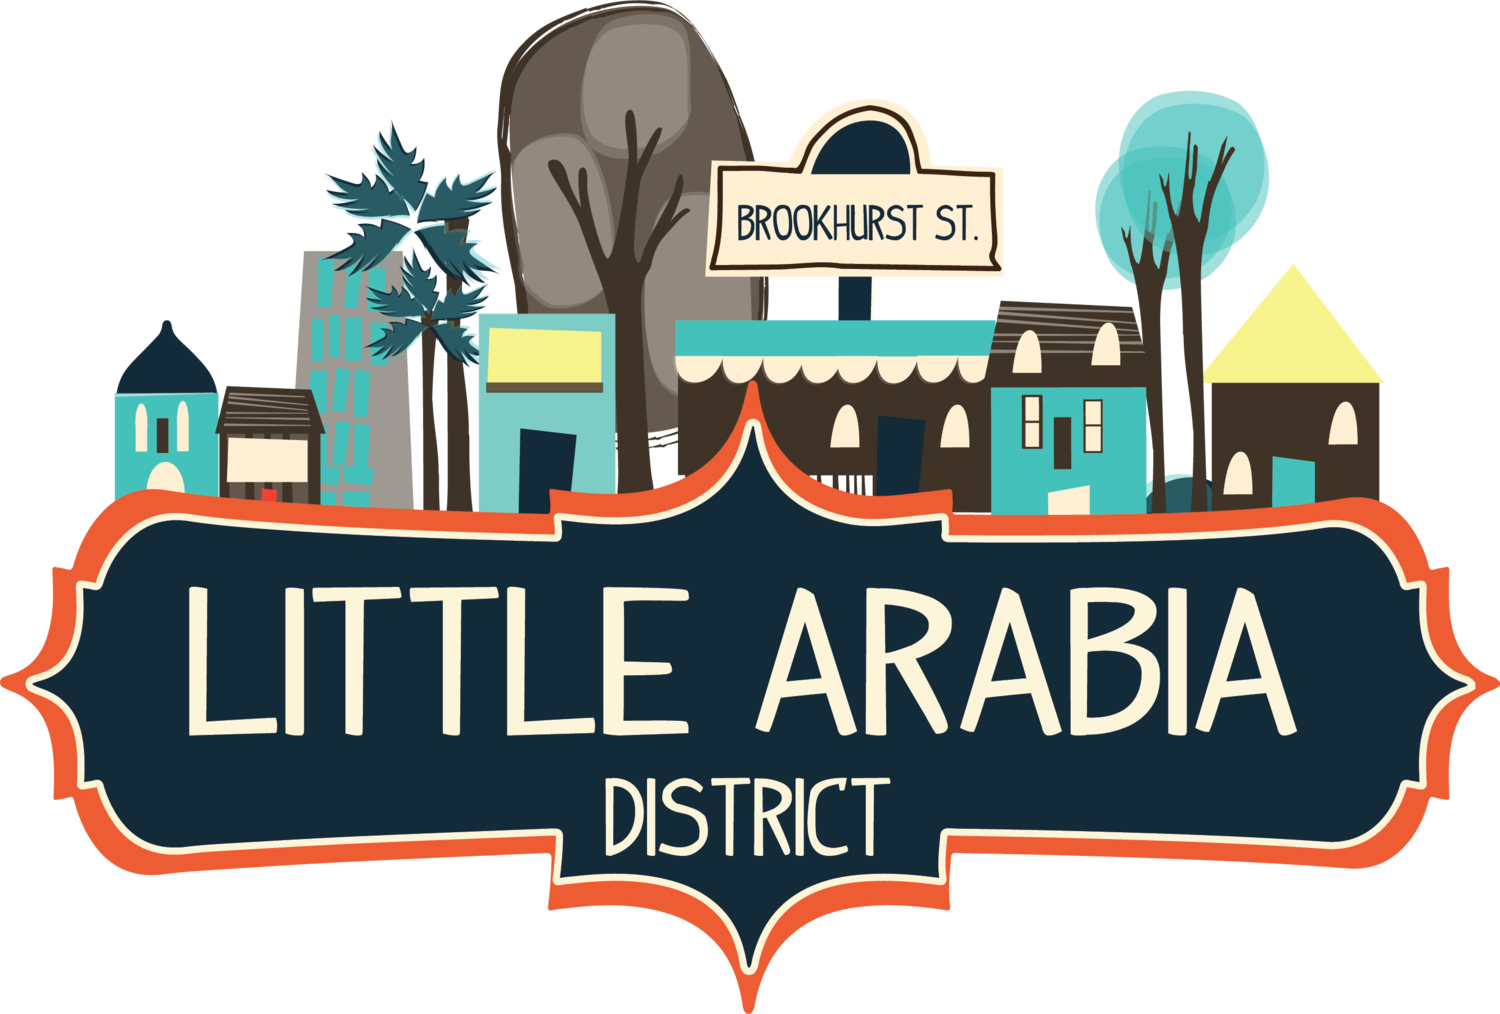 Little Arabia District